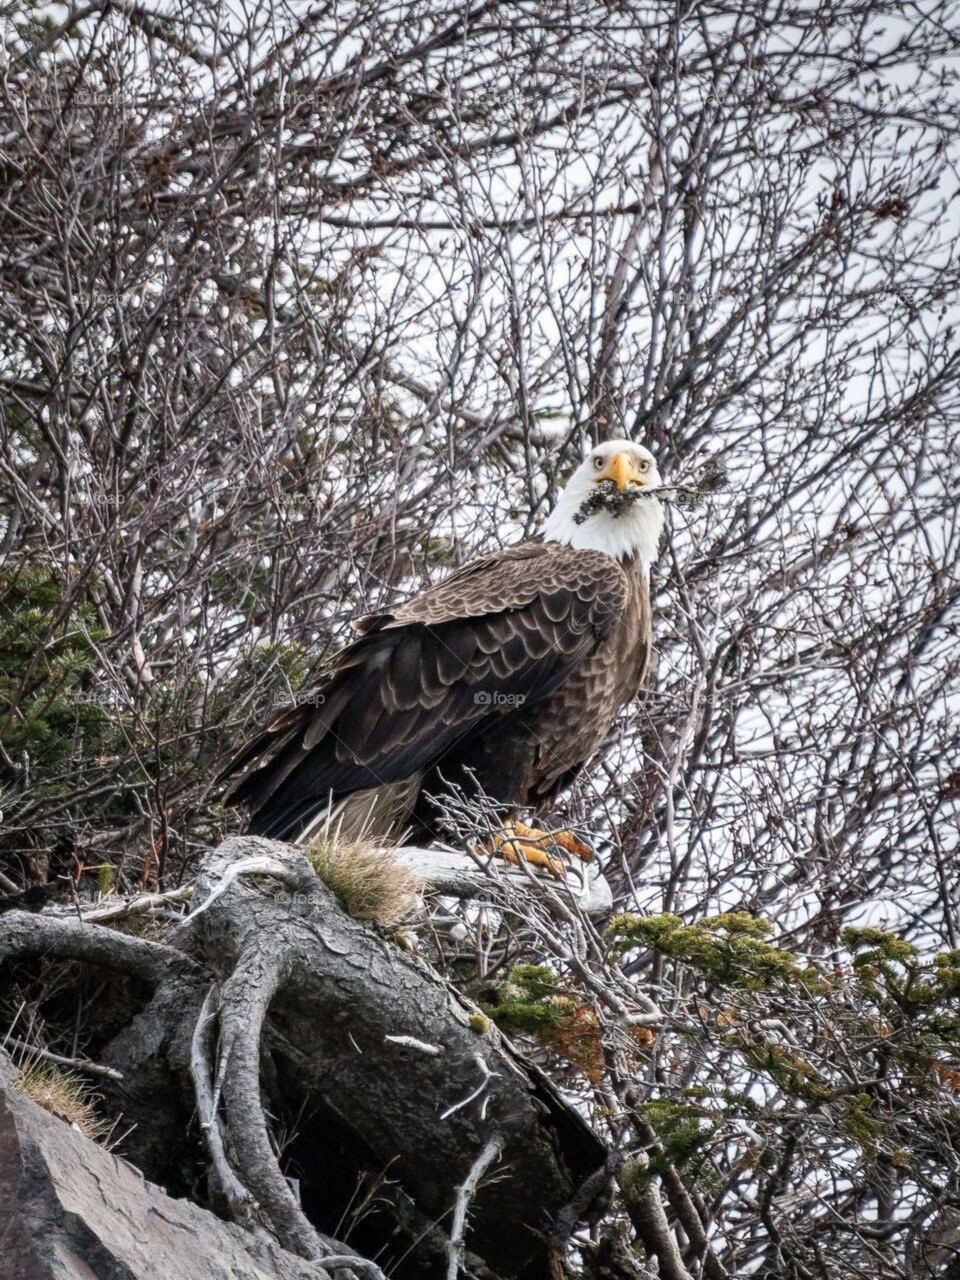 Eagle enjoying lunch